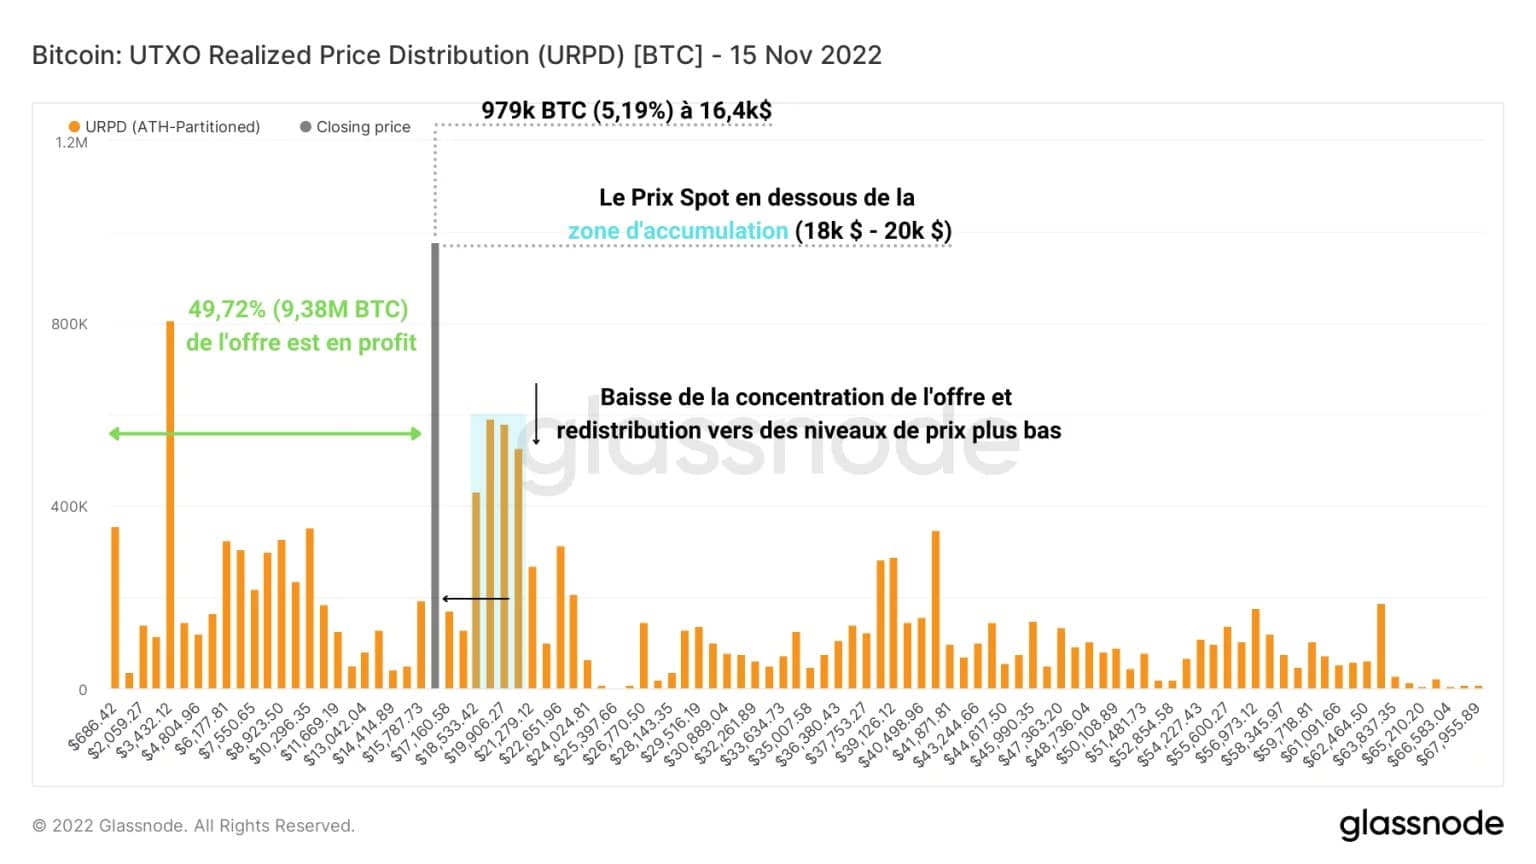 Obrázek 3: Rozložení realizované ceny UTXO (15. listopadu 2022)